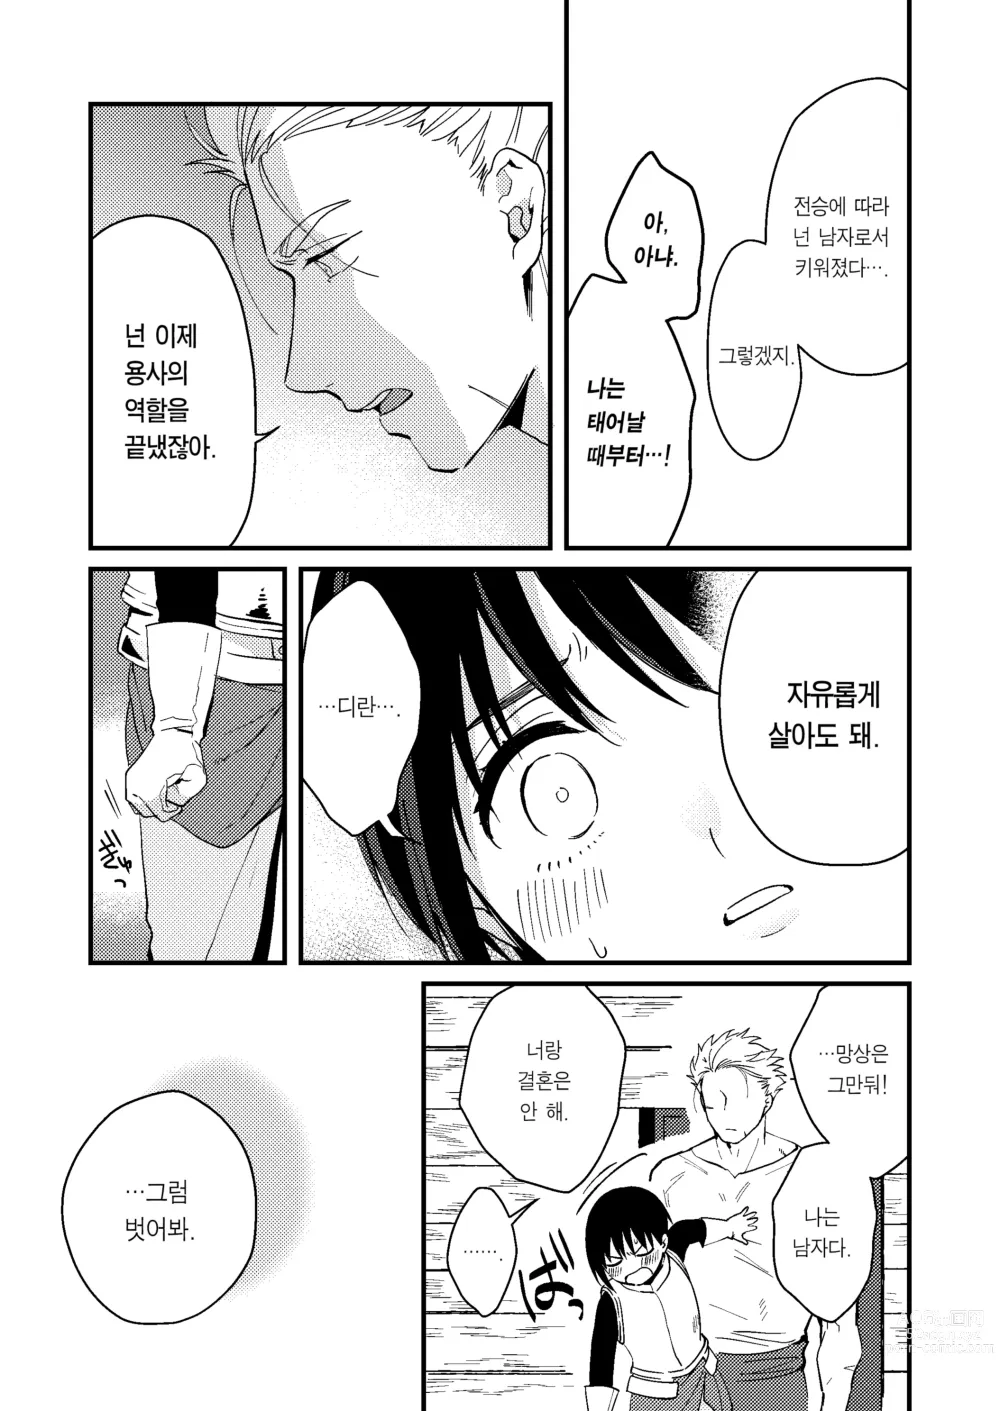 Page 10 of doujinshi 세계가 평화로워져서 용사(사실은 ♀)에게 구혼한 결과